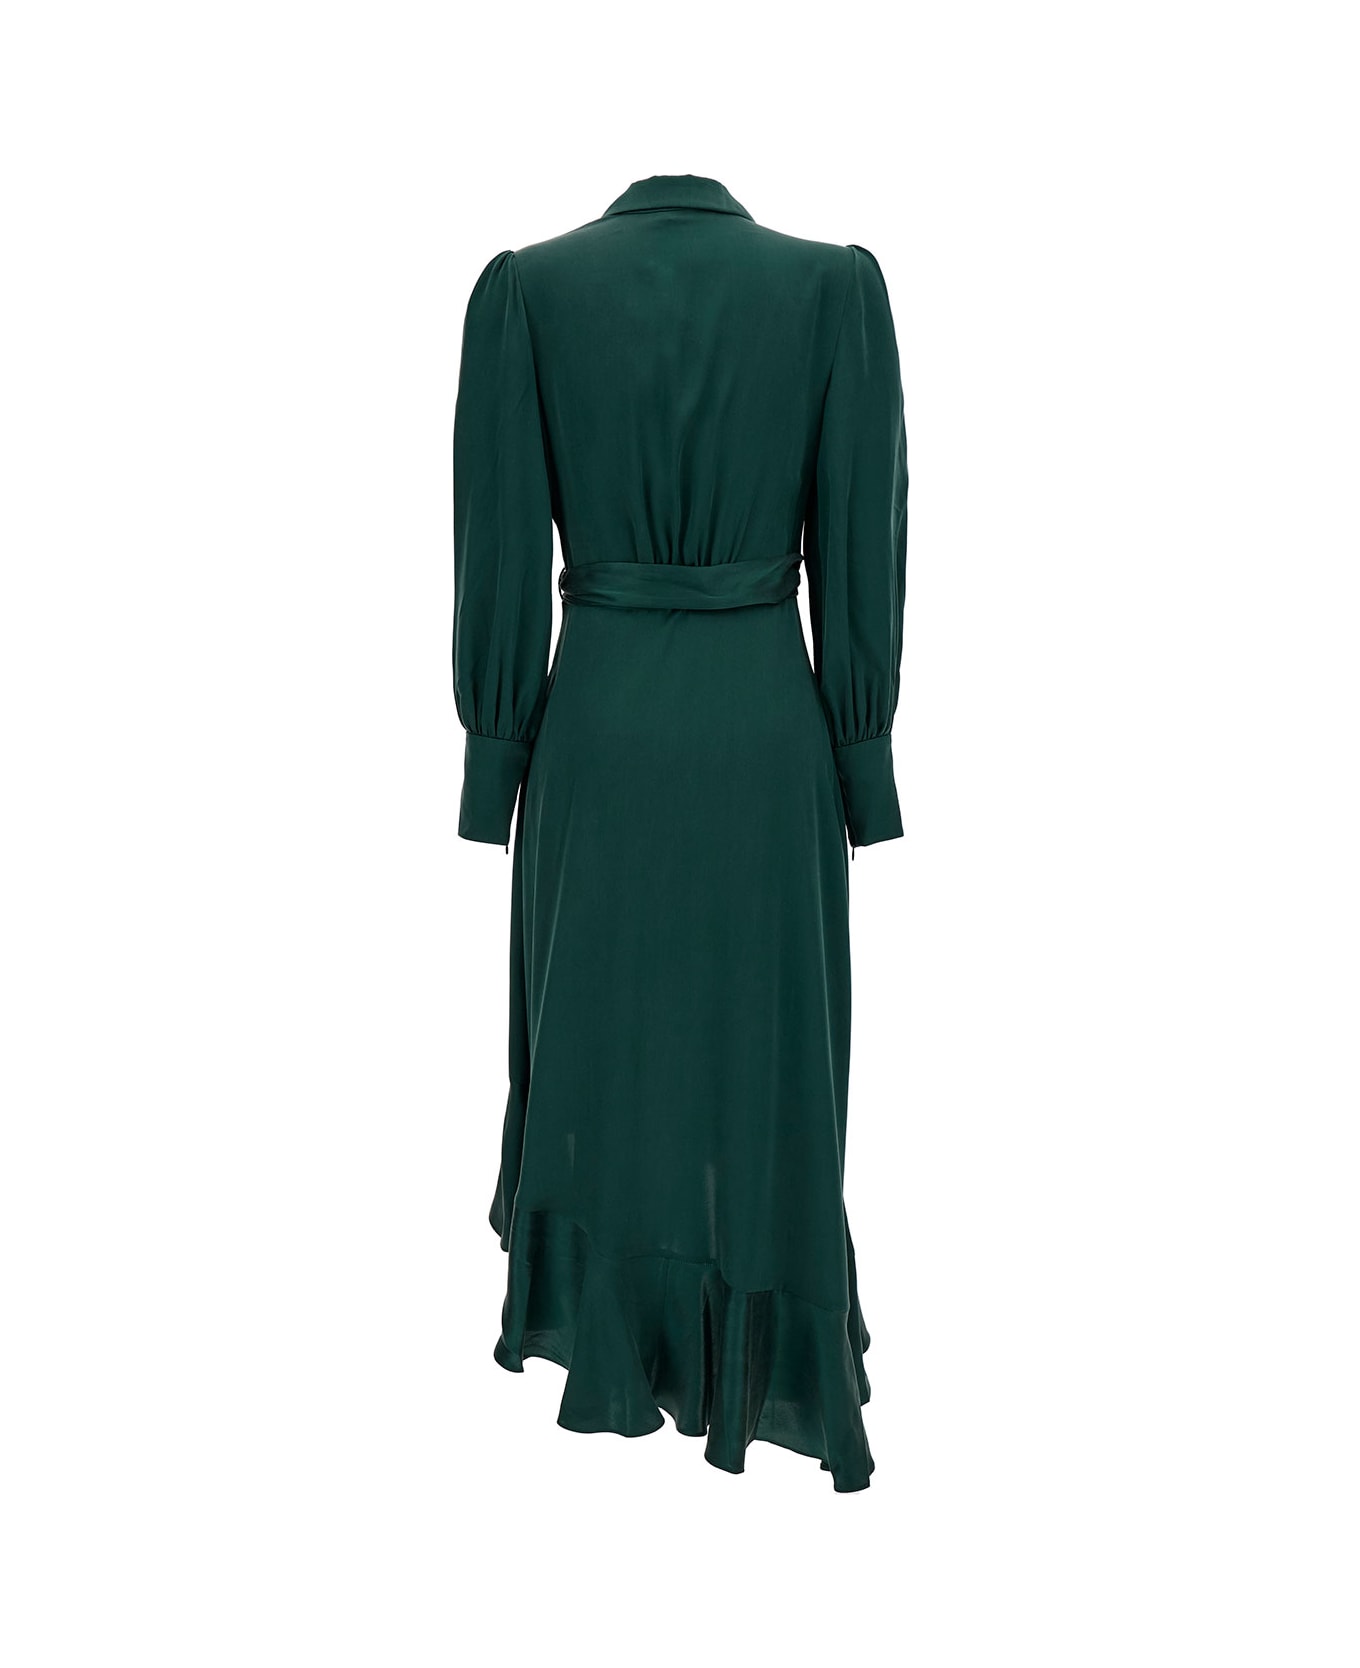 Zimmermann Midi Asymmetric Green Dress With Belt In Silk Woman - Green